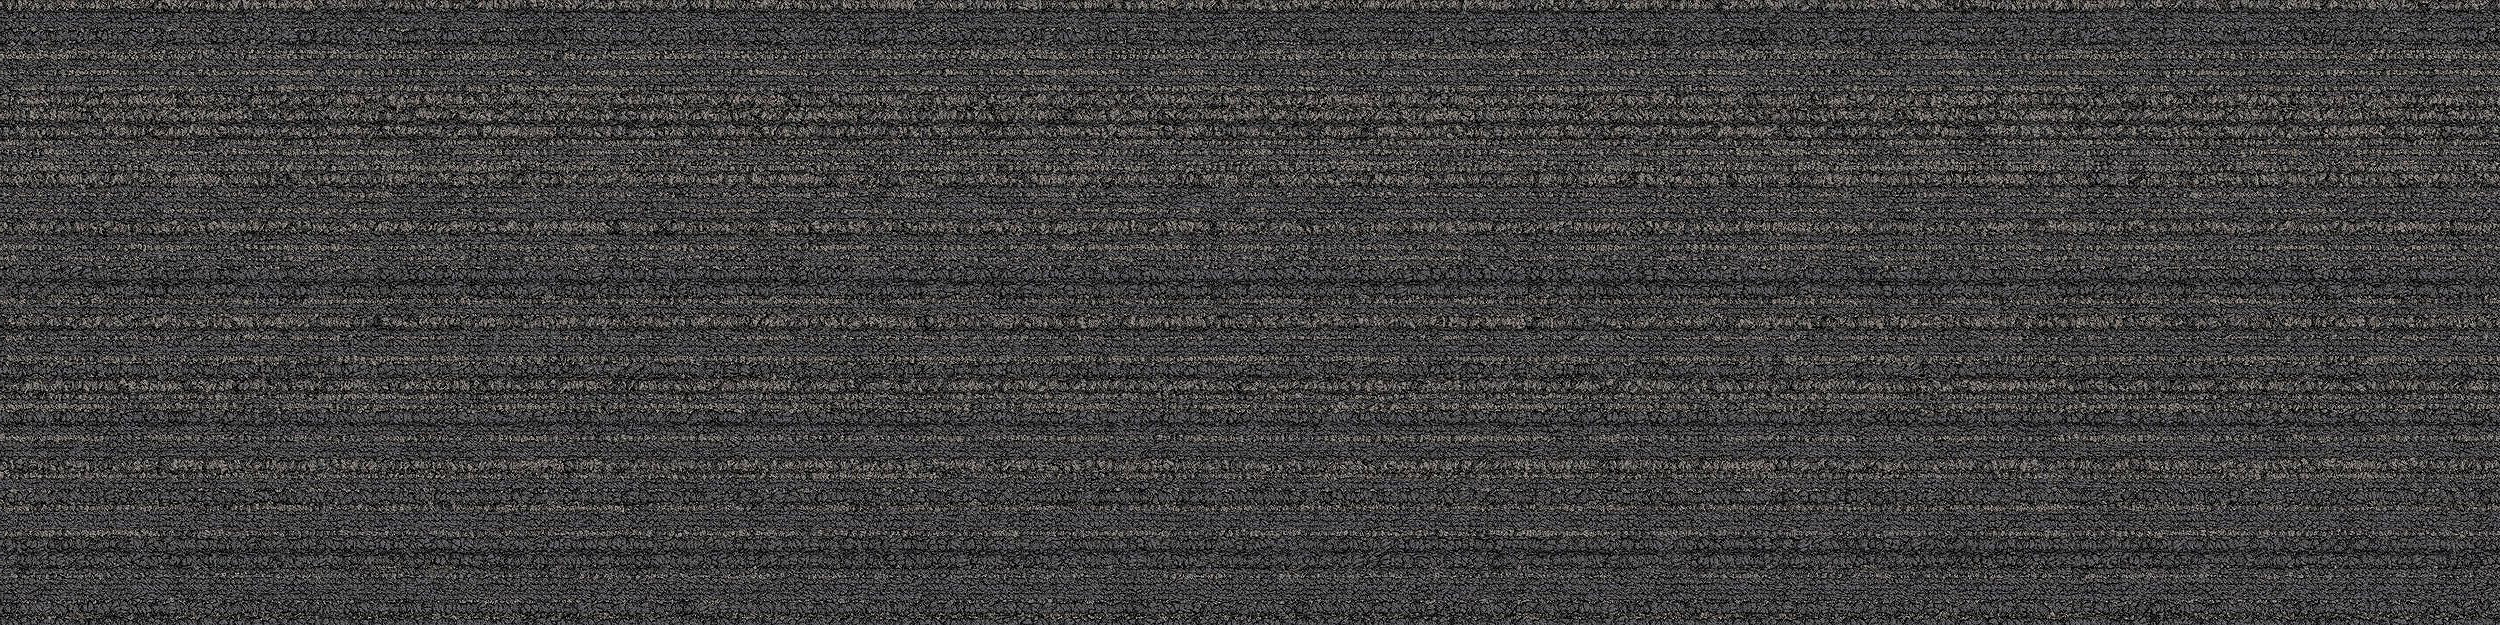 SL910 Carpet Tile In Charcoal image number 7